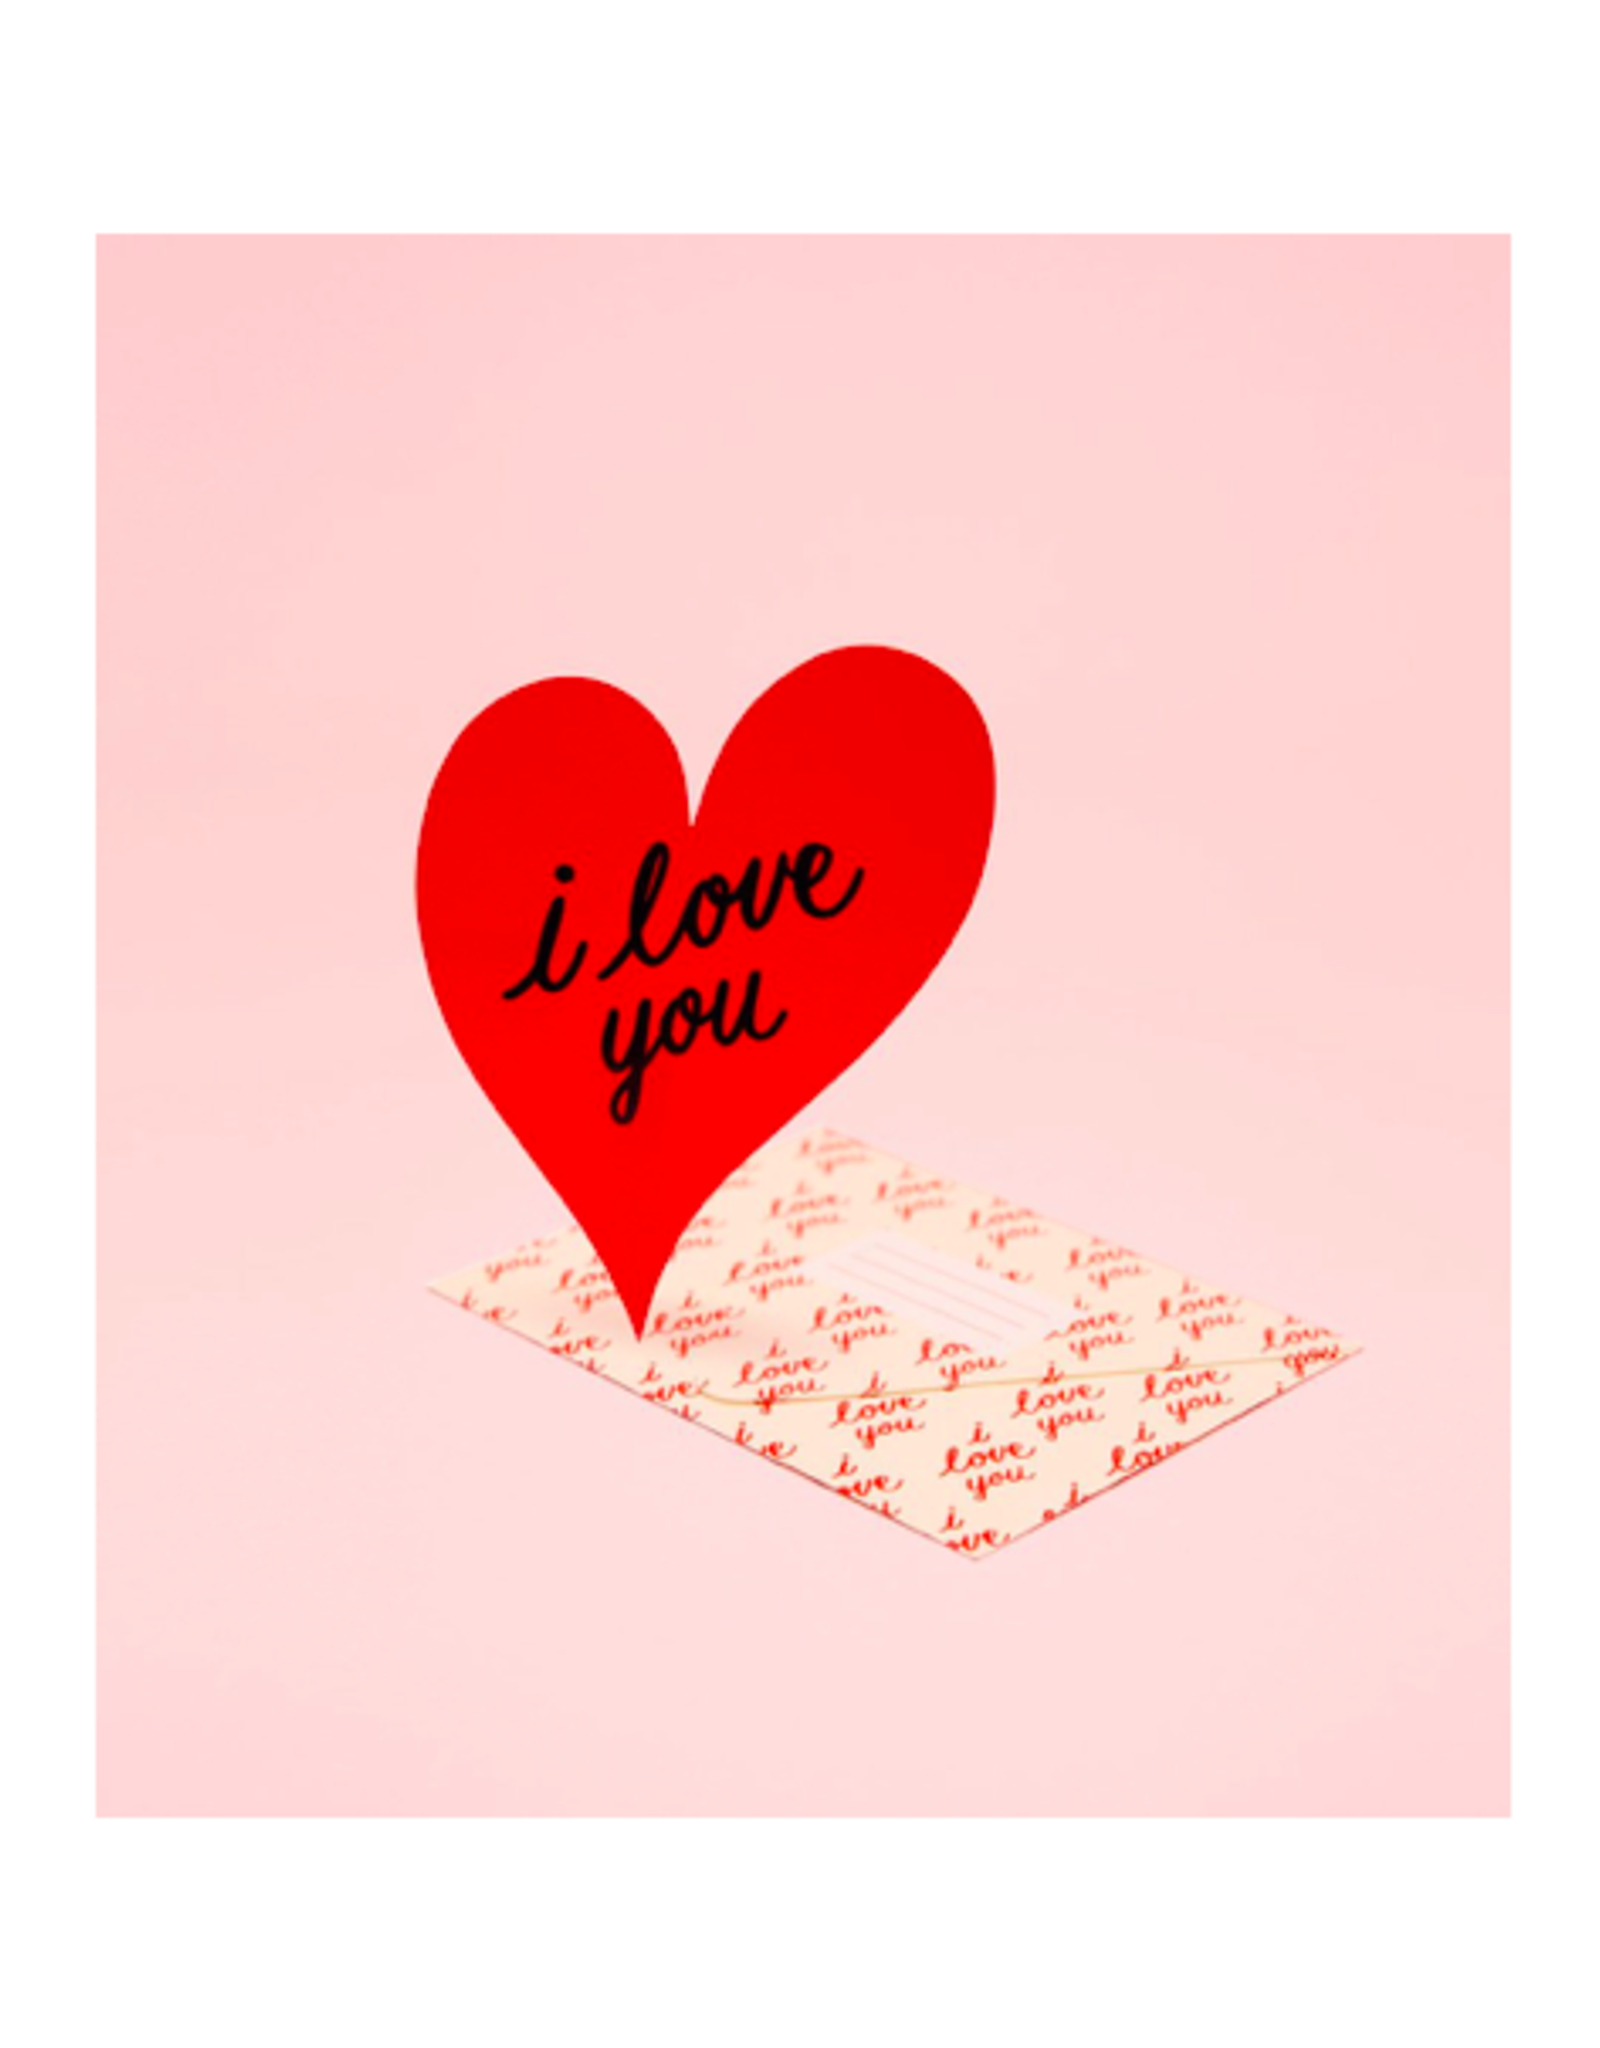 CAP - Card / I Love You, 4.25 x 5.5"